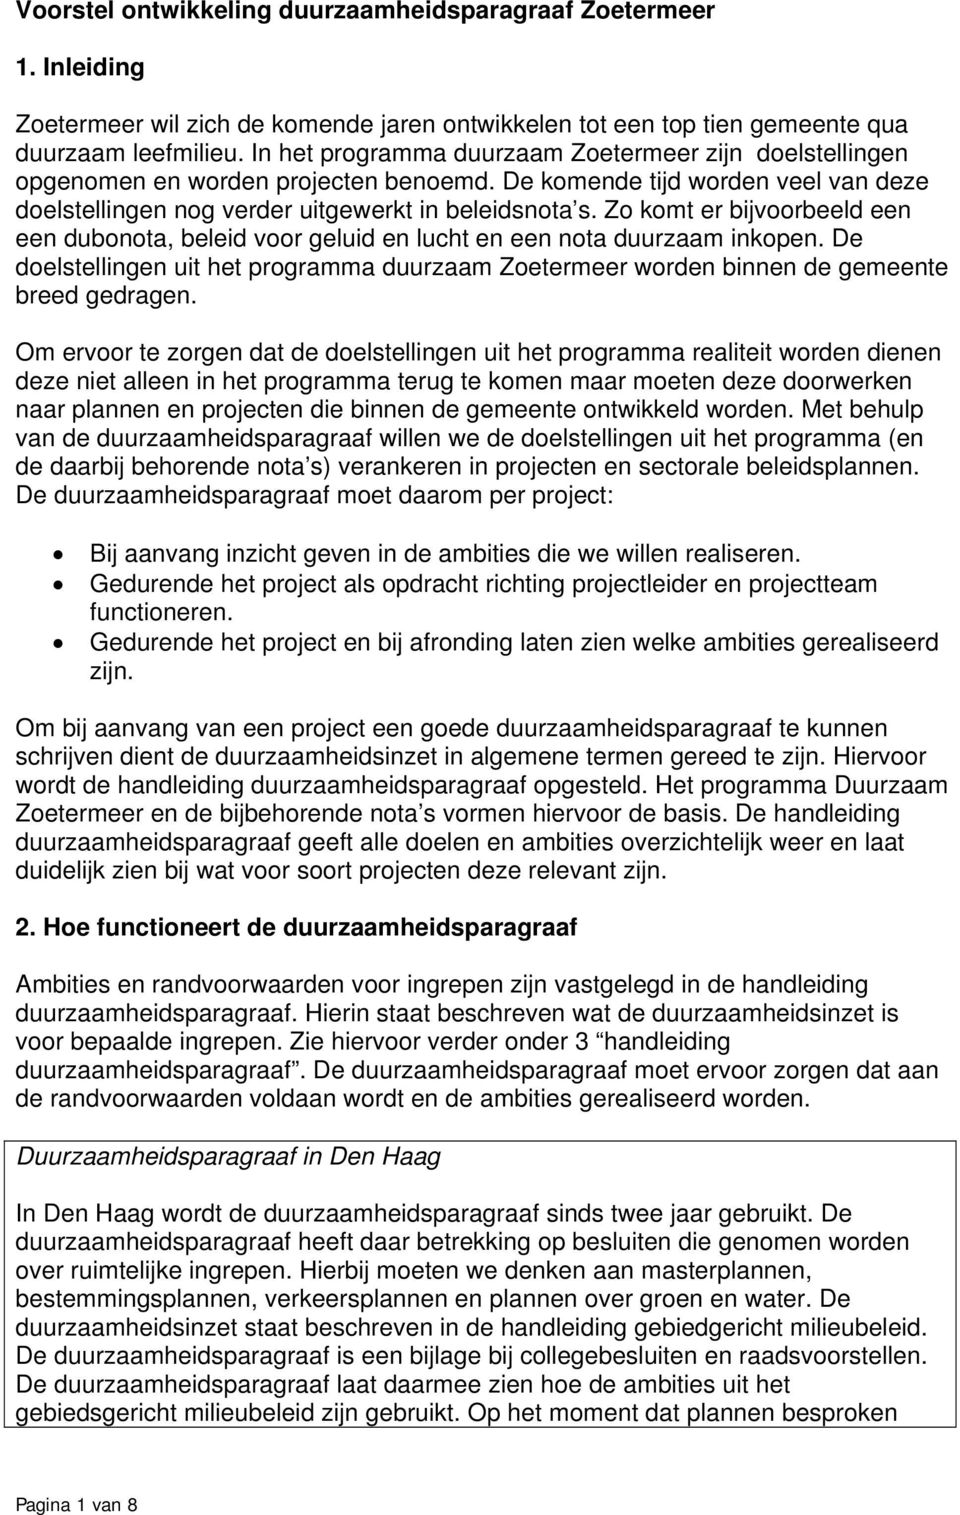 Zo komt er bijvoorbeeld een een dubonota, beleid voor geluid en lucht en een nota duurzaam inkopen. De doelstellingen uit het programma duurzaam Zoetermeer worden binnen de gemeente breed gedragen.